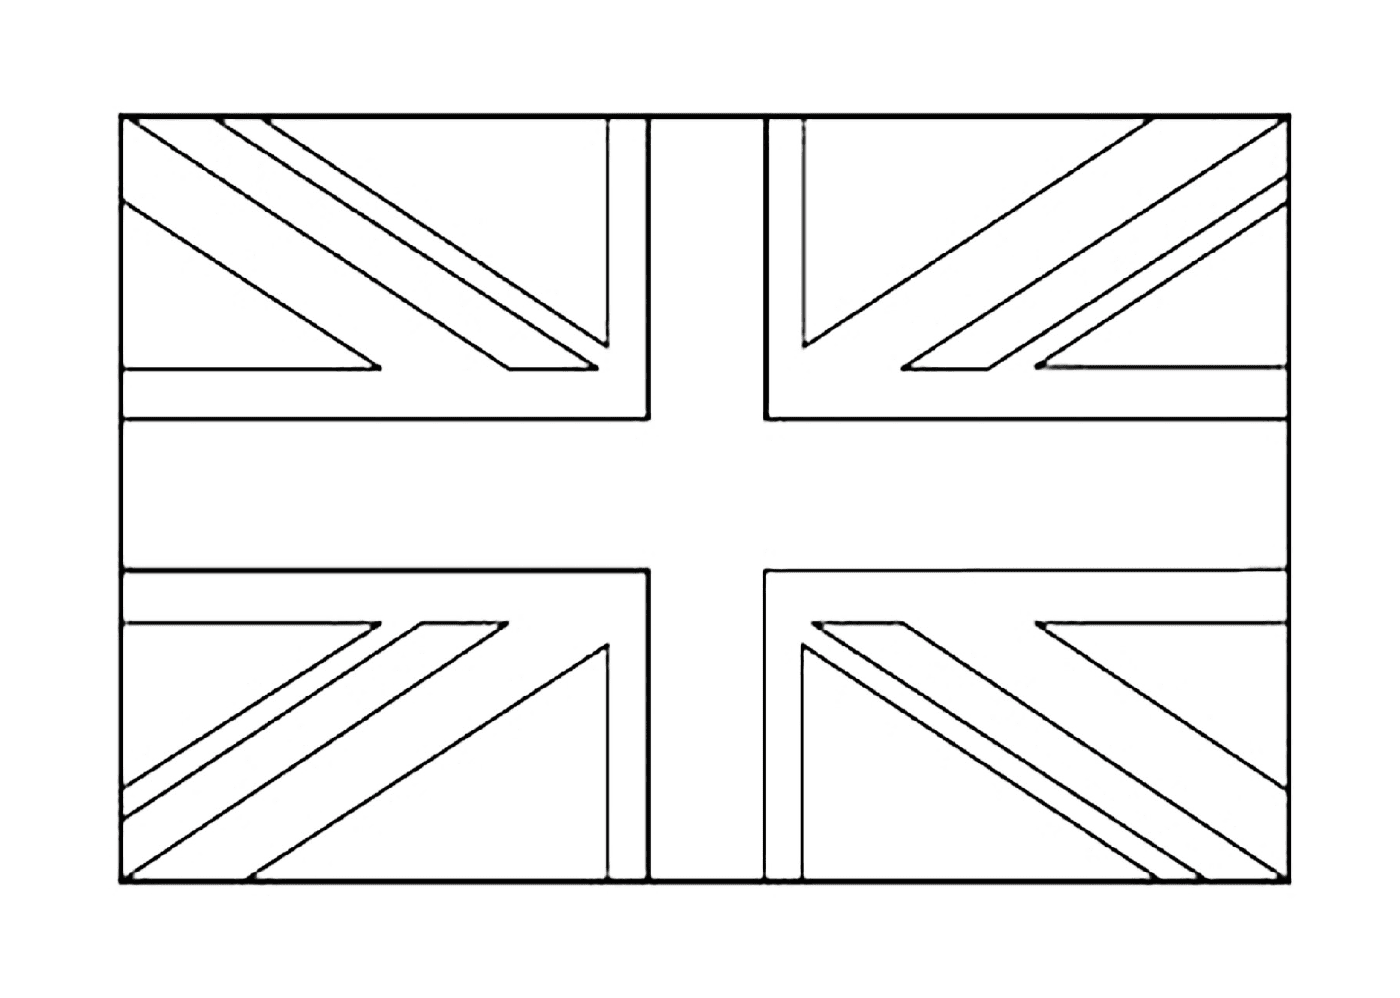  A British Flag 